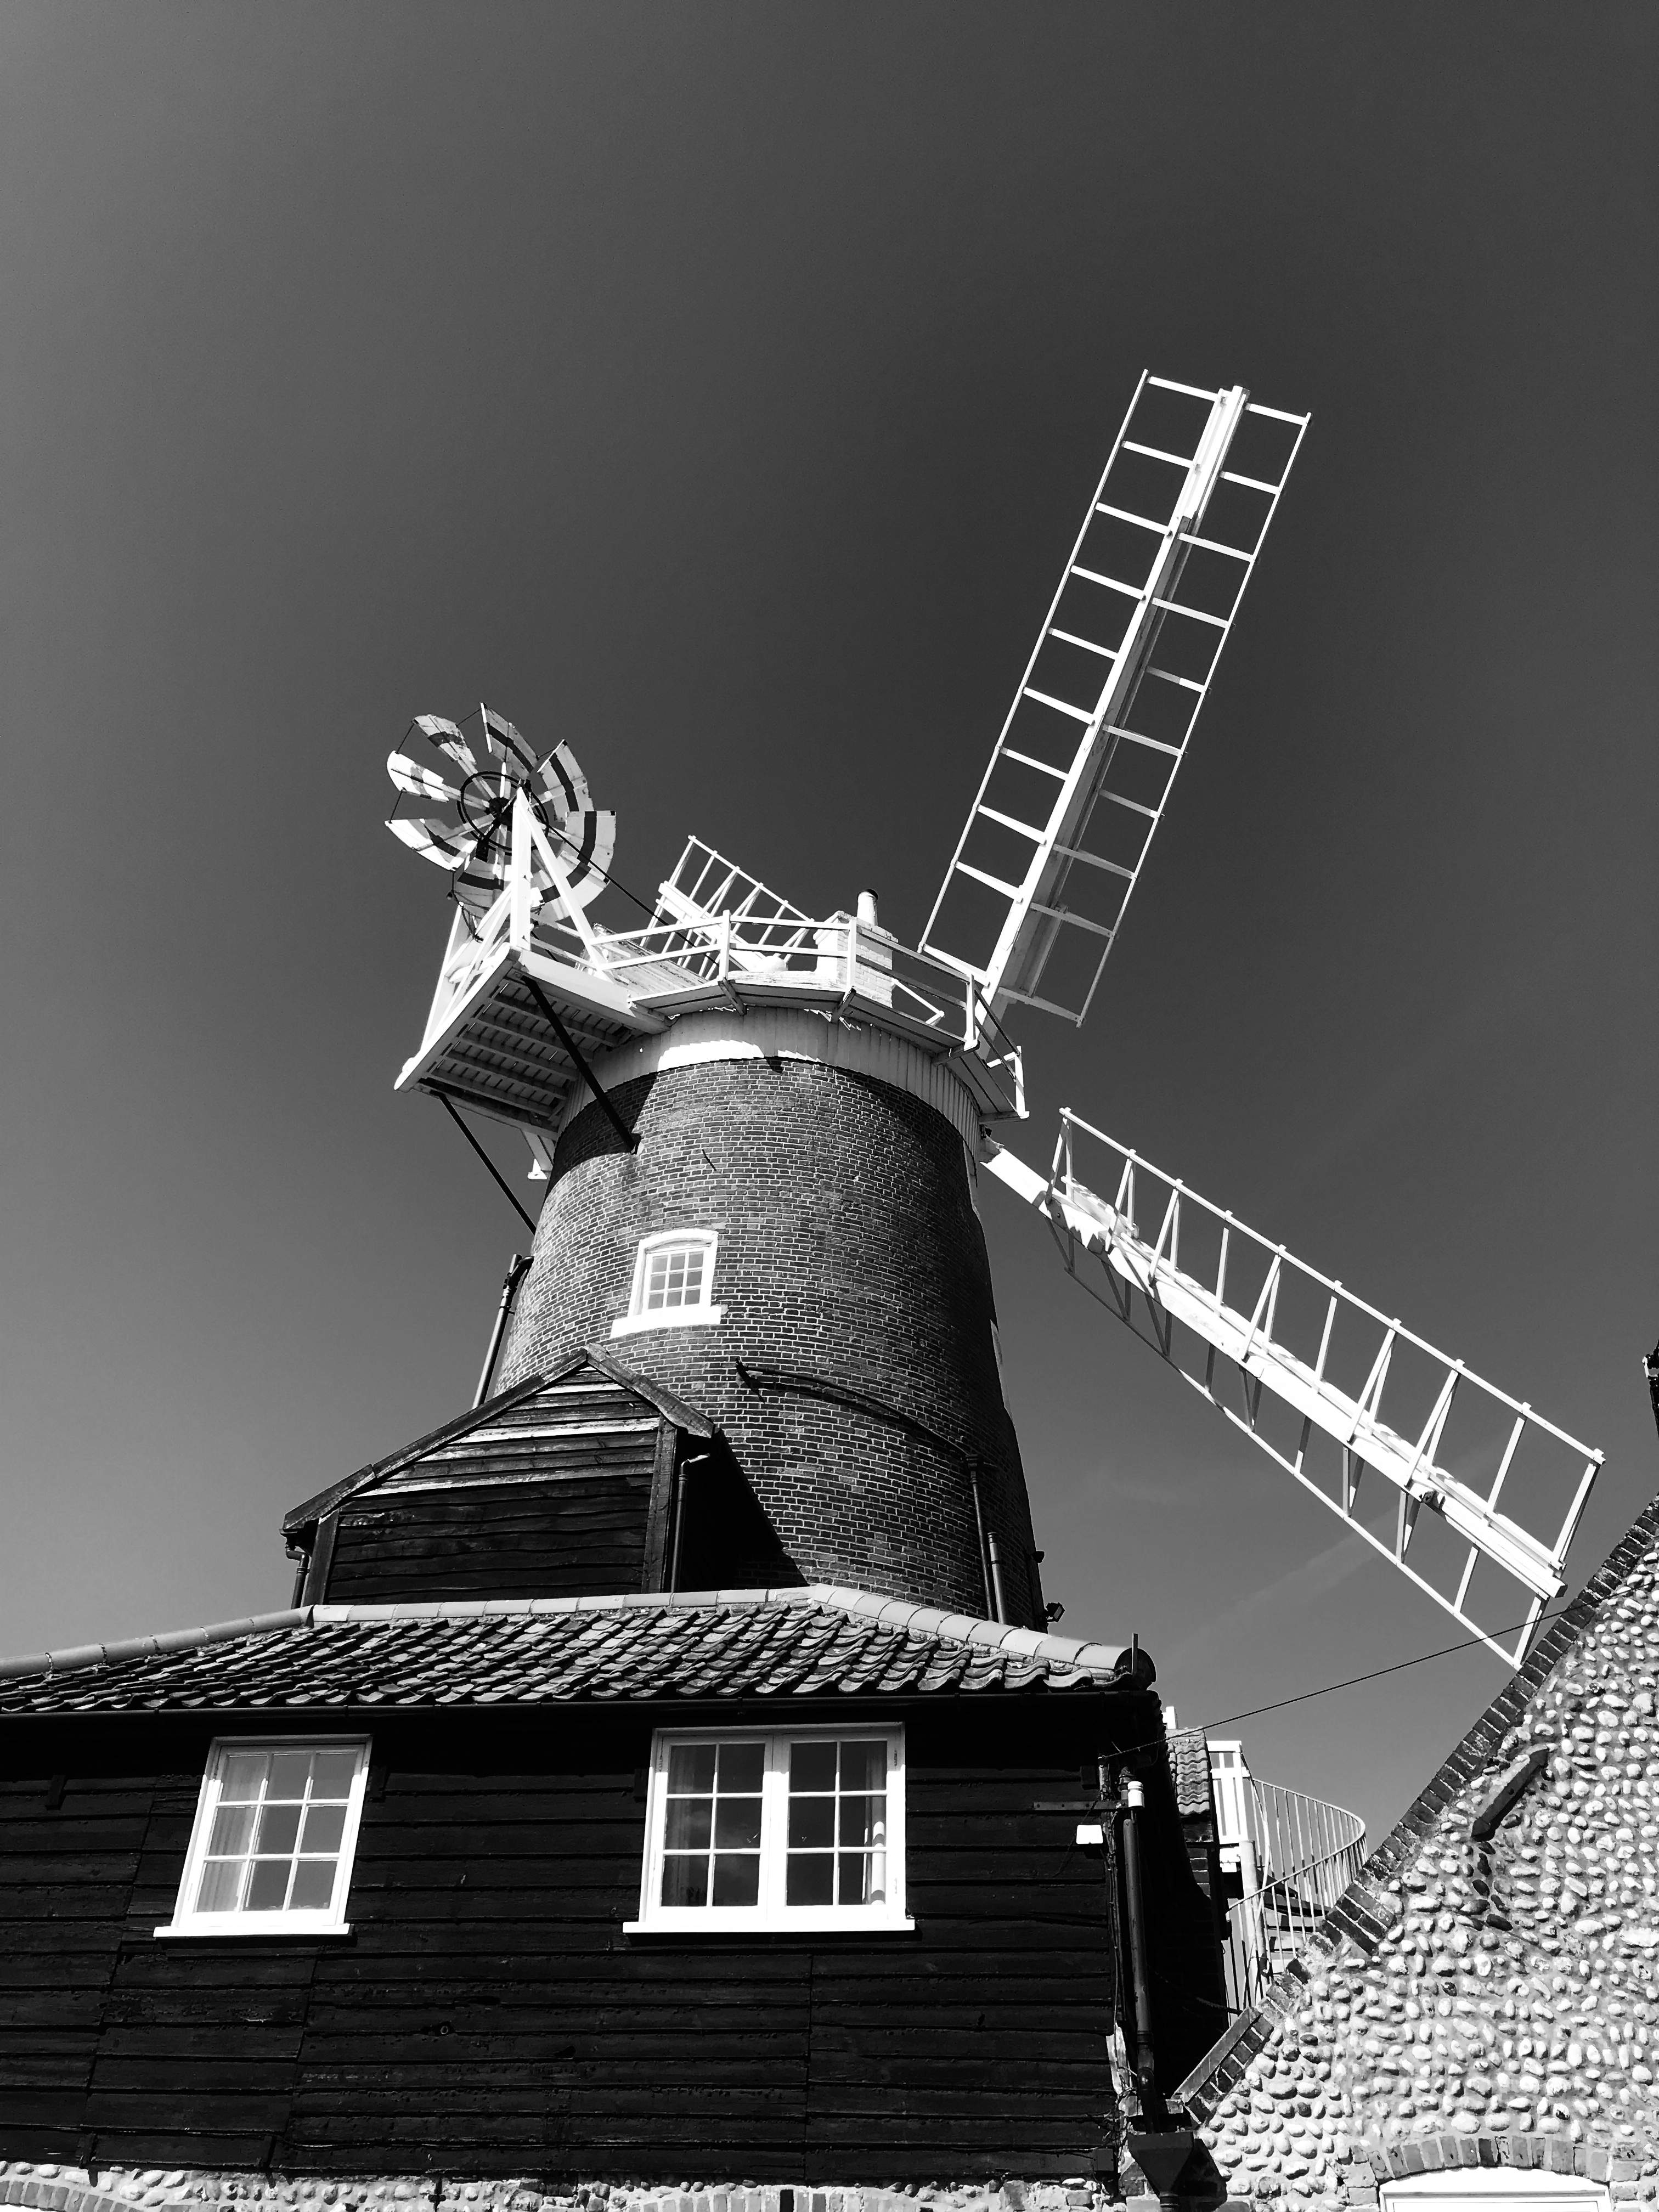 Beautiful windmill in Cley on Sea